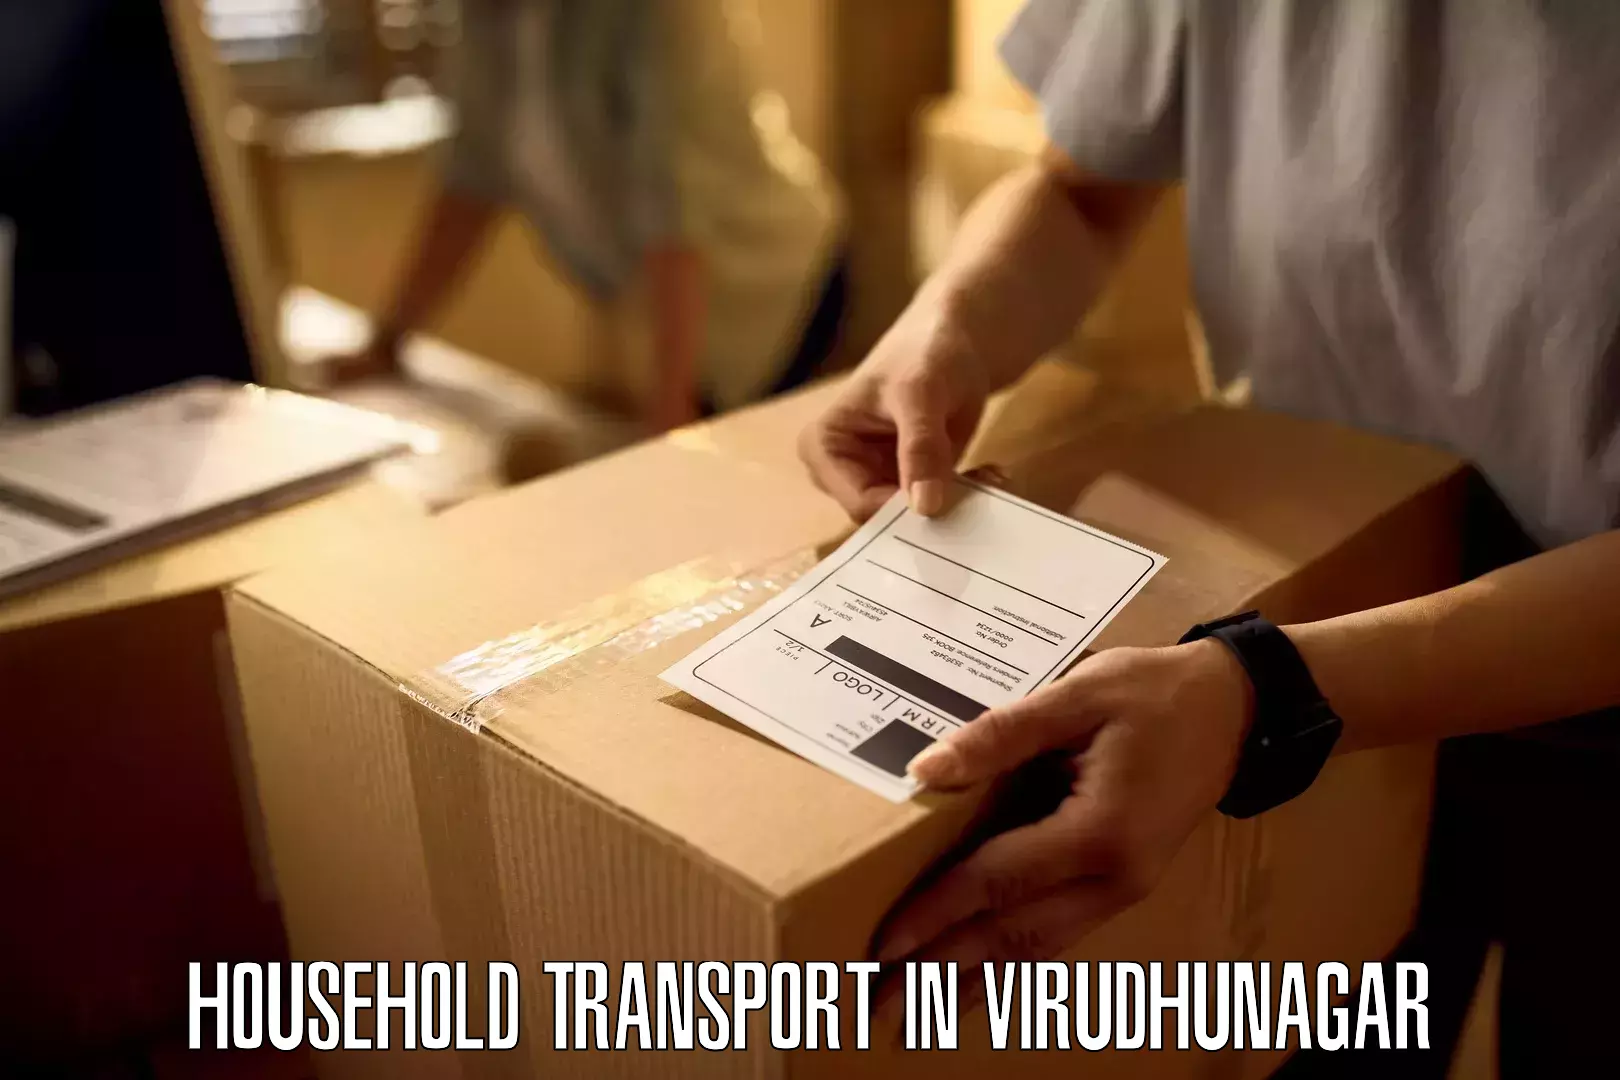 Furniture moving experts in Virudhunagar